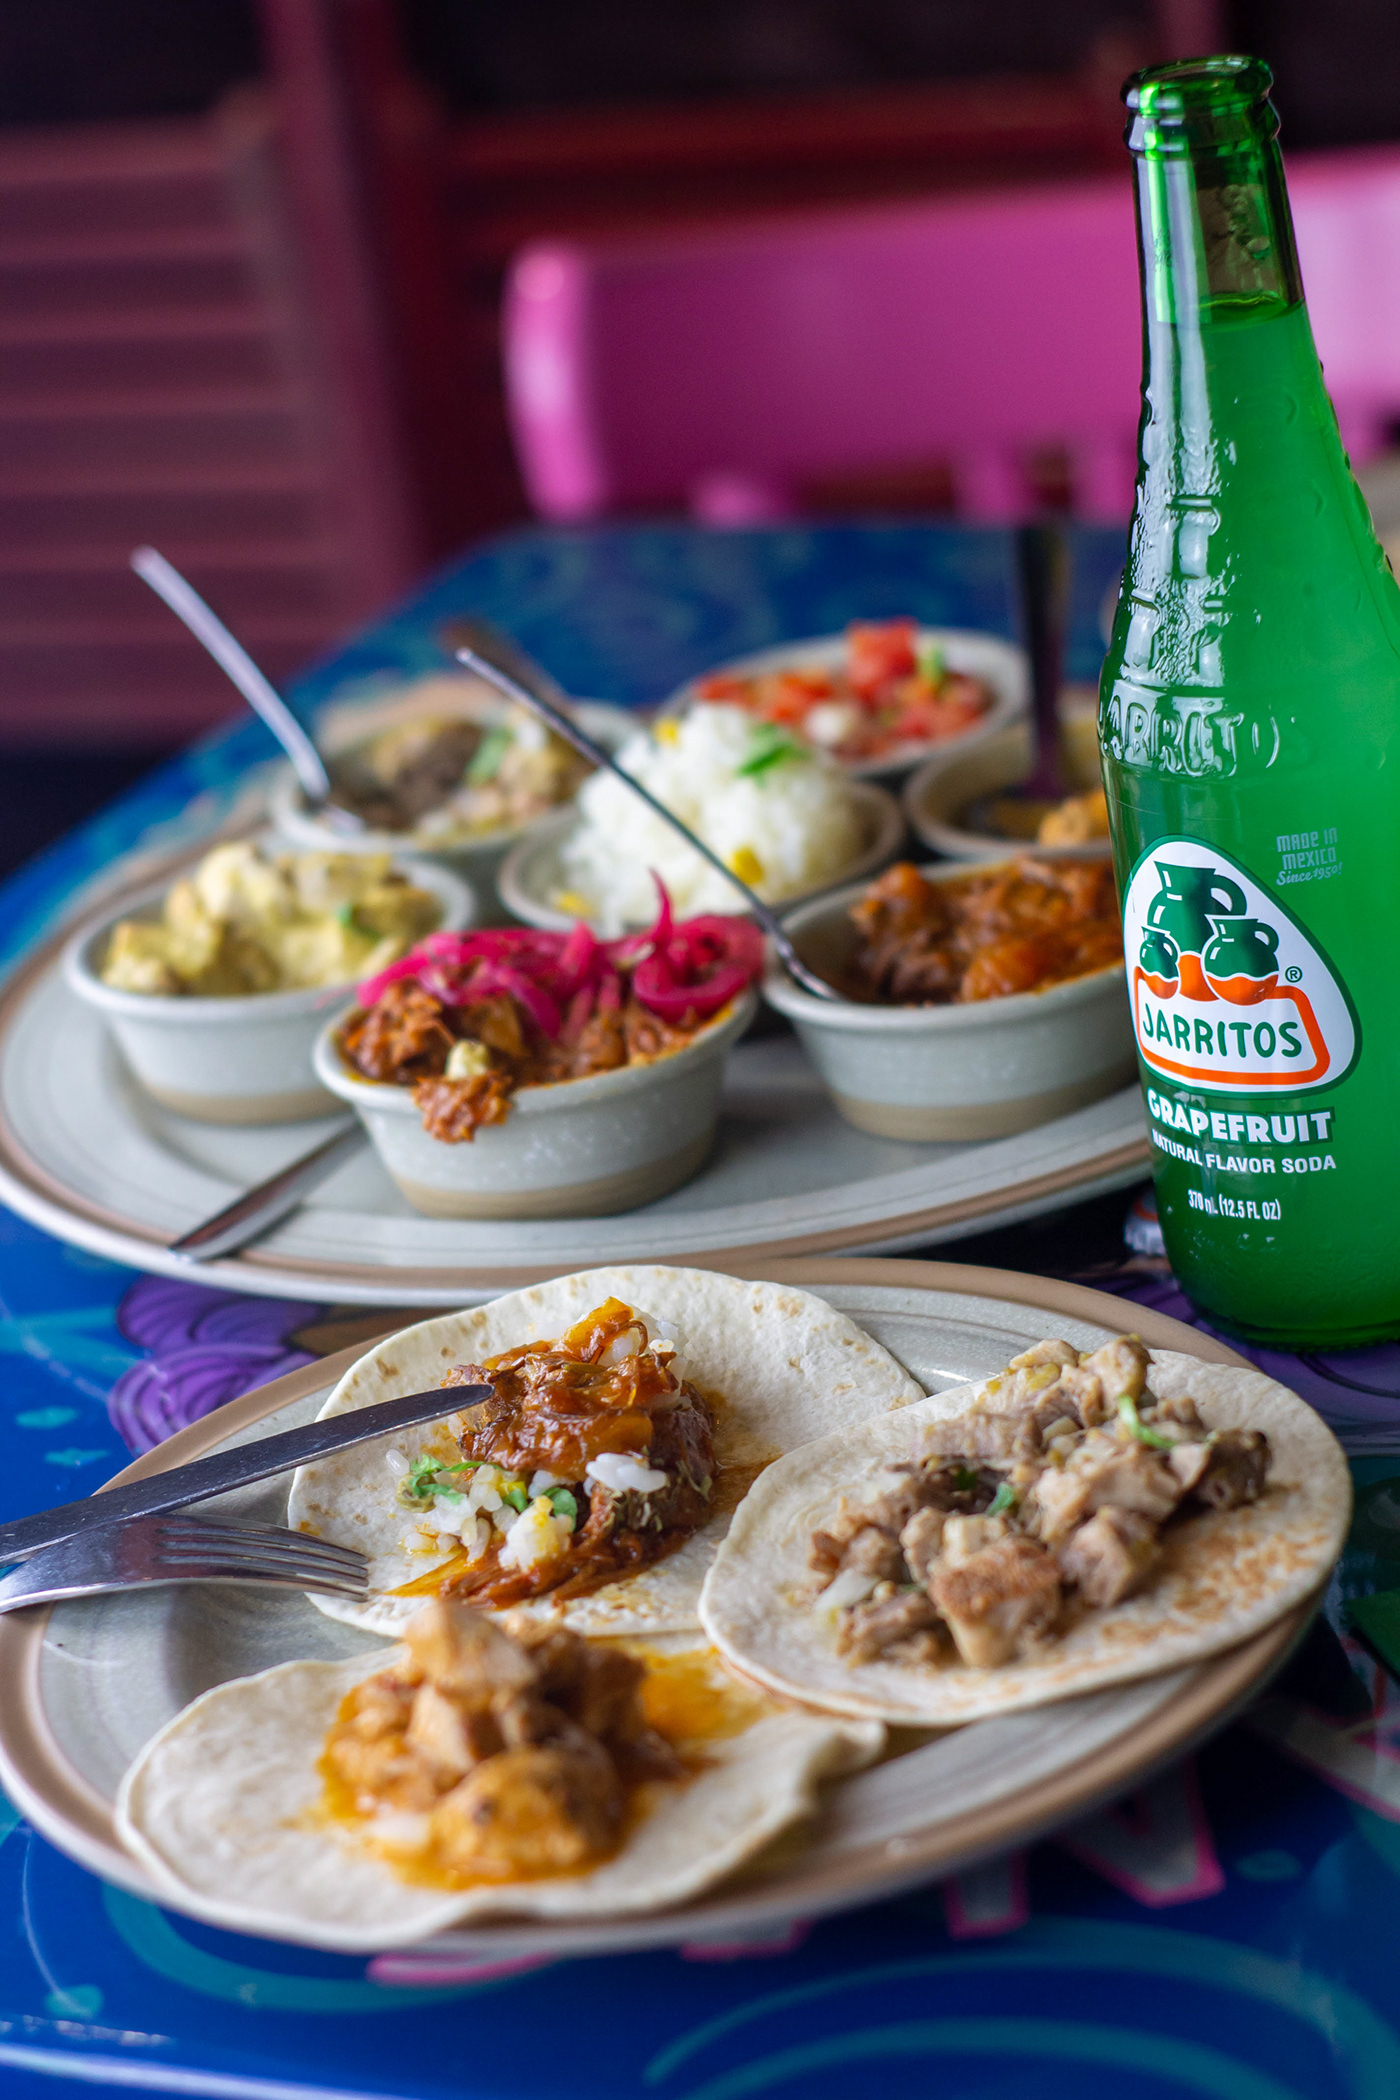 Fotografia jarritos la mordida Mexican Food instagram photoshoot restaurant